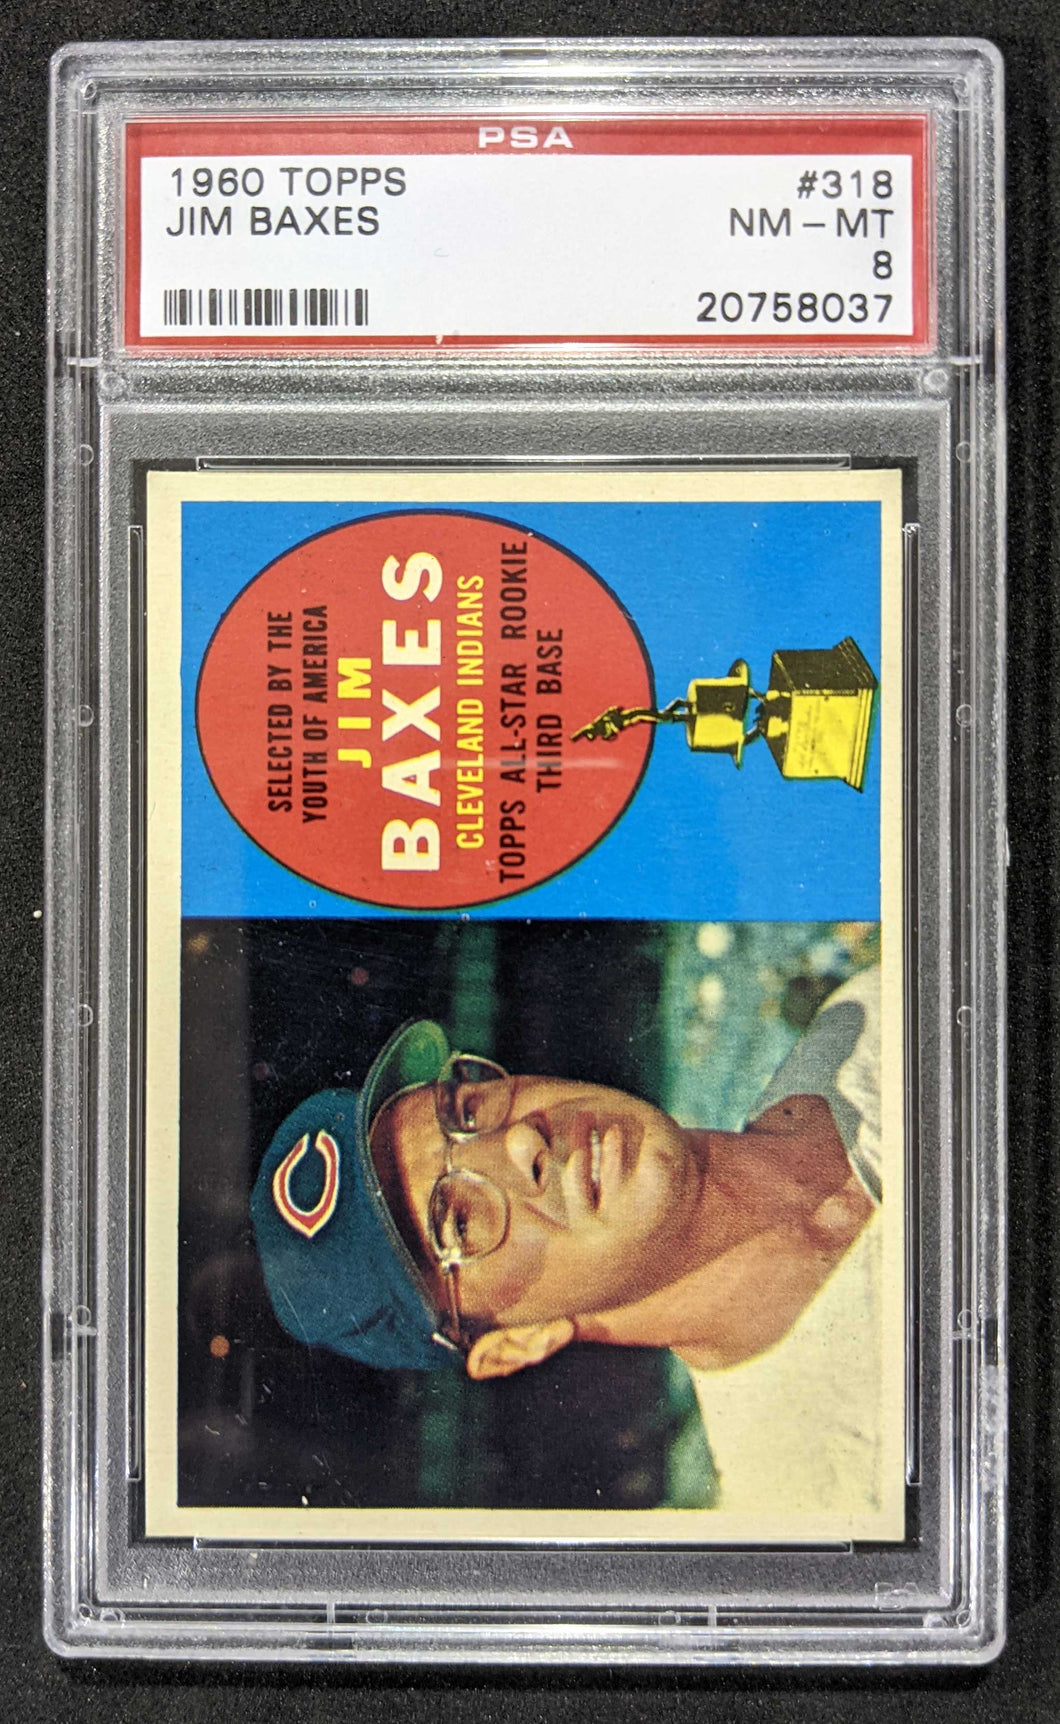 1960 Topps Jim Baxes #318 PSA NM-MT 8